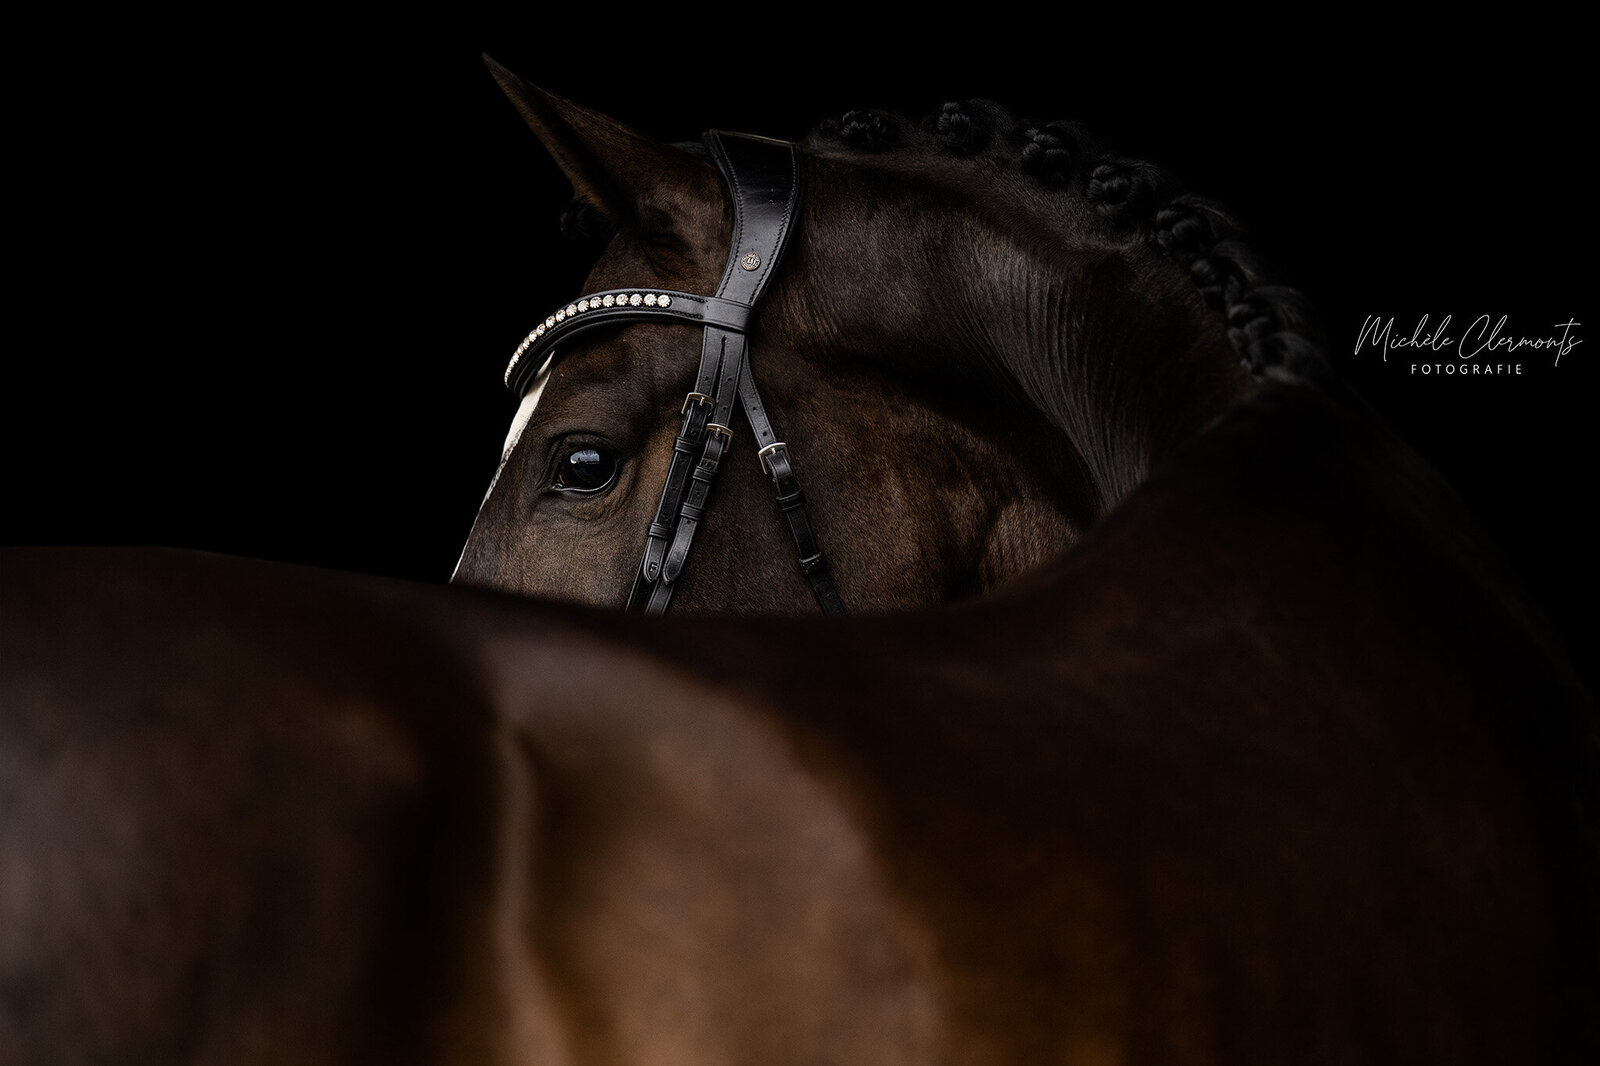 DSC_2426-5-paarden-fotografie-michèle clermonts fotografie